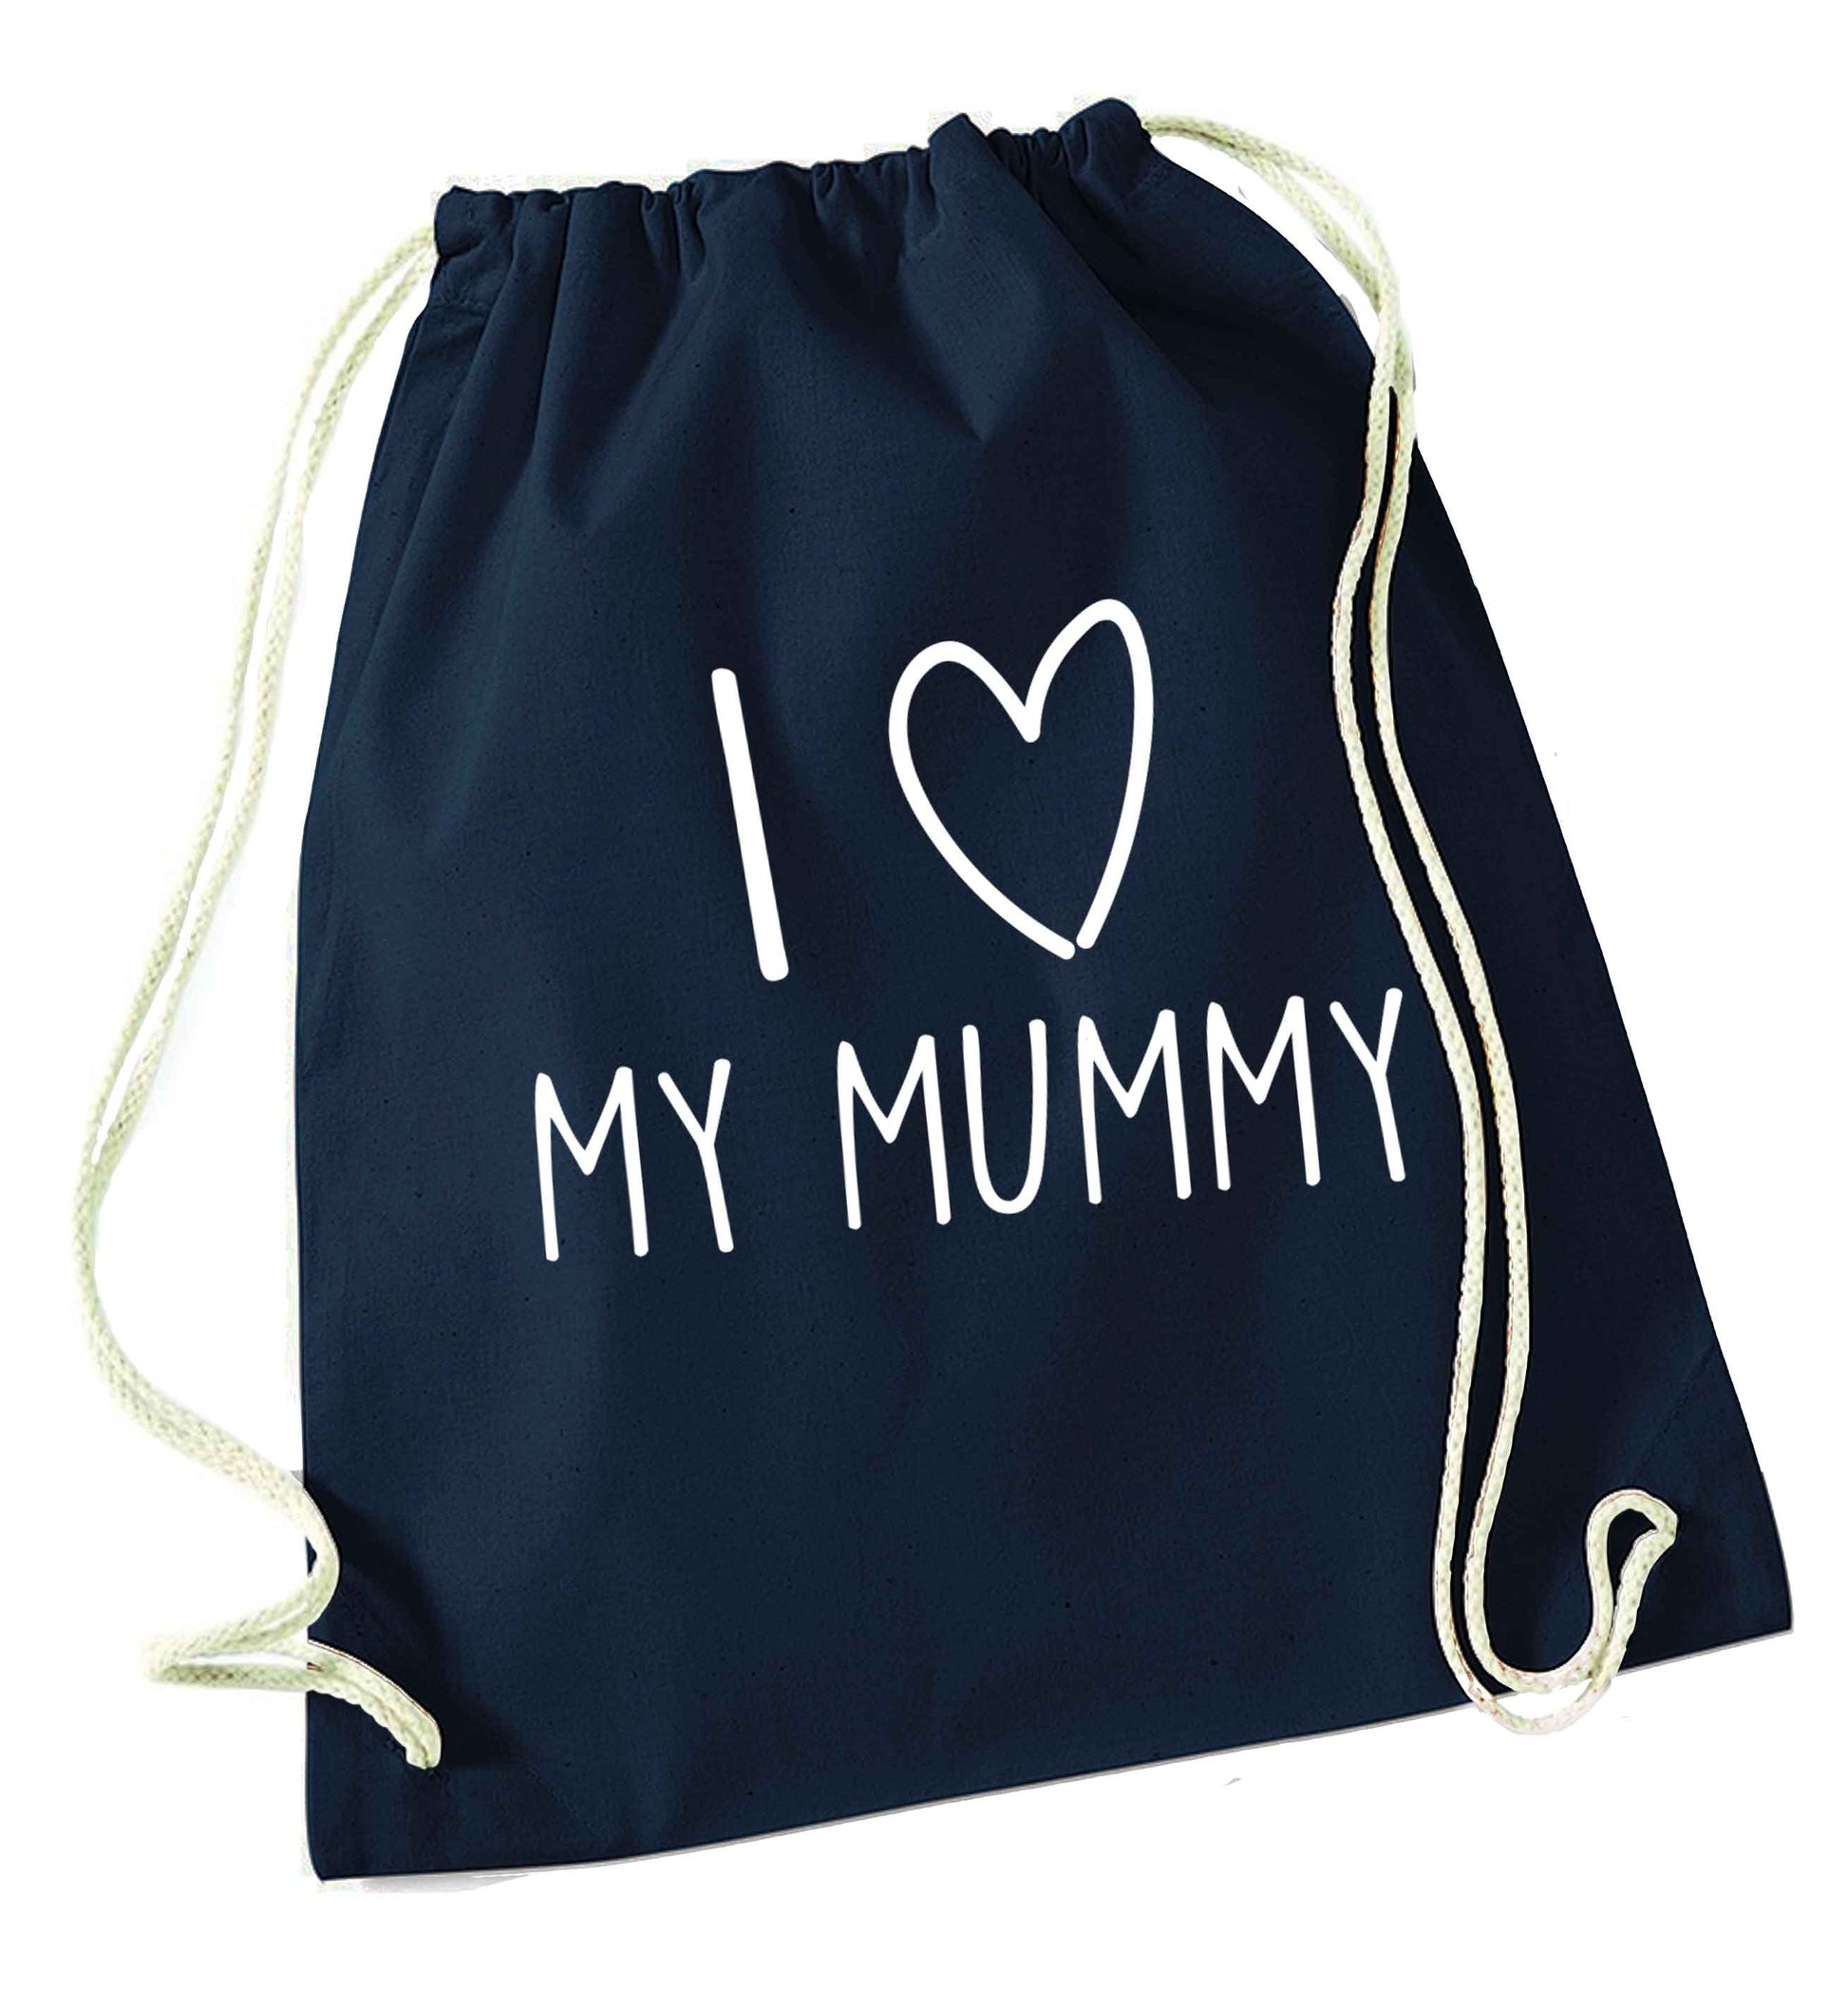 I love my mummy navy drawstring bag